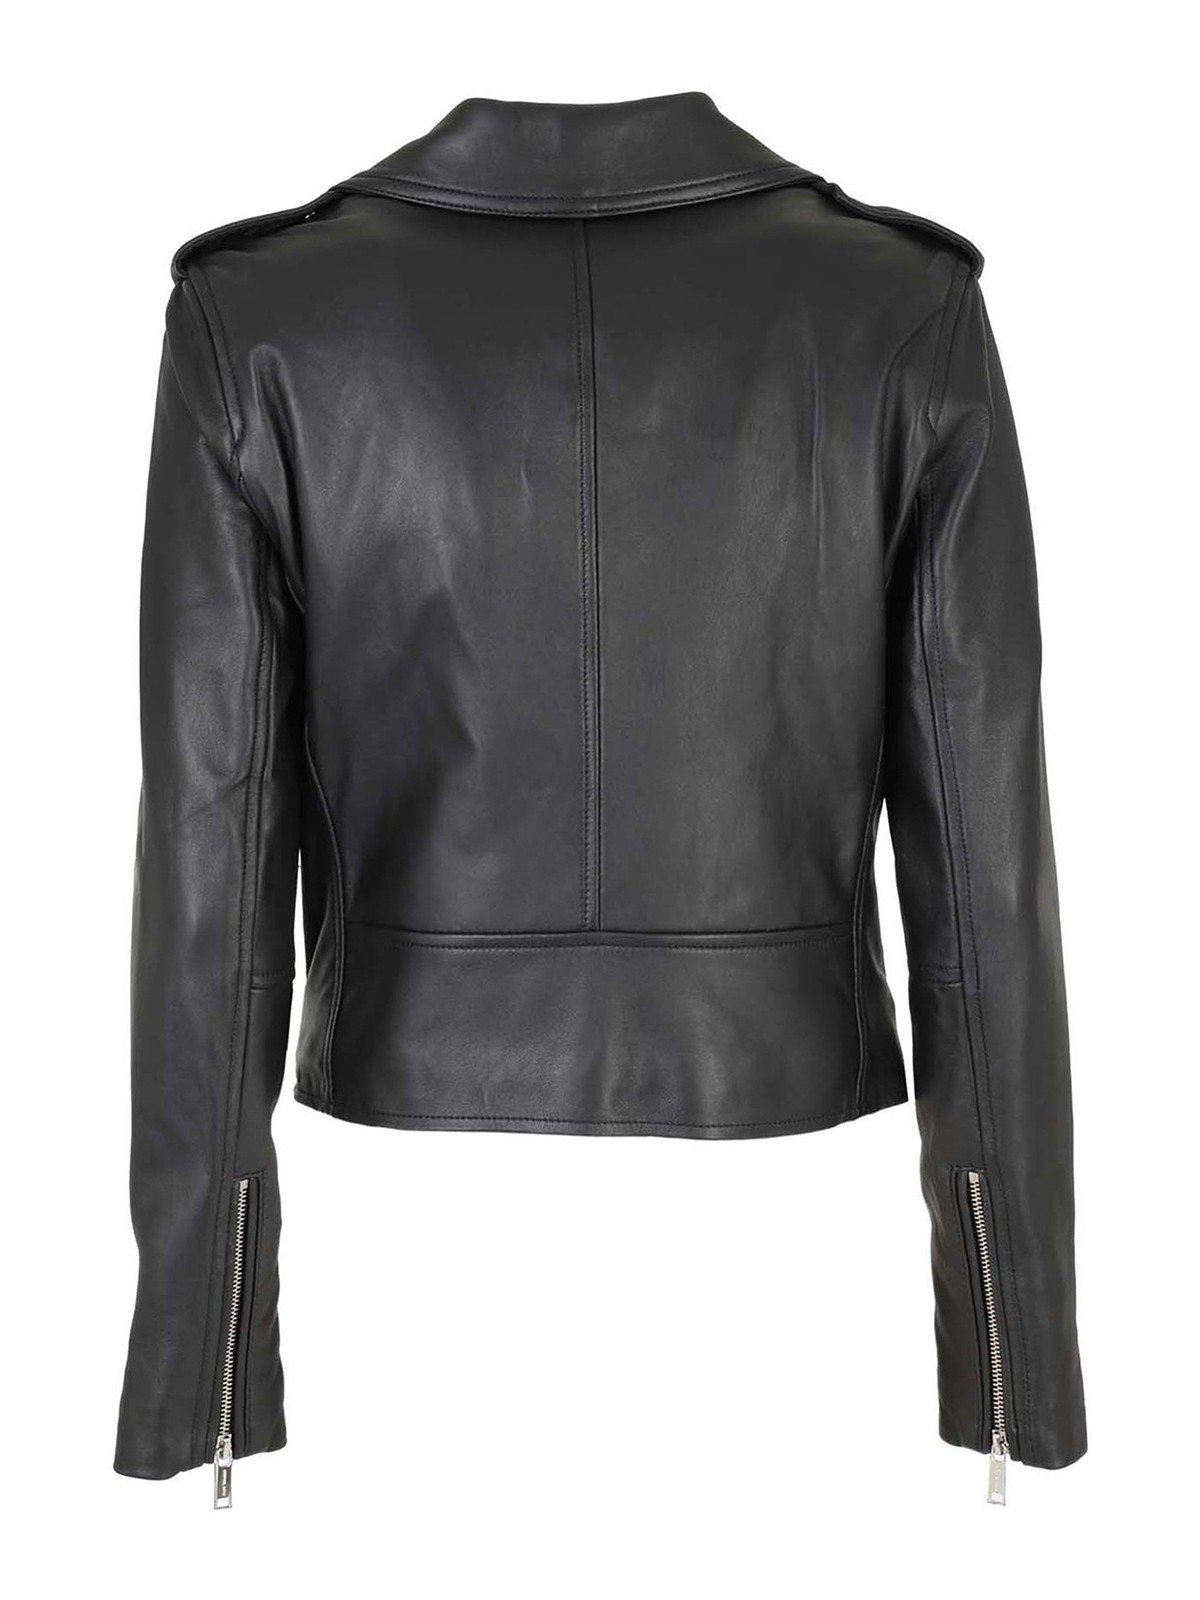 michael kors metallic leather moto jacket